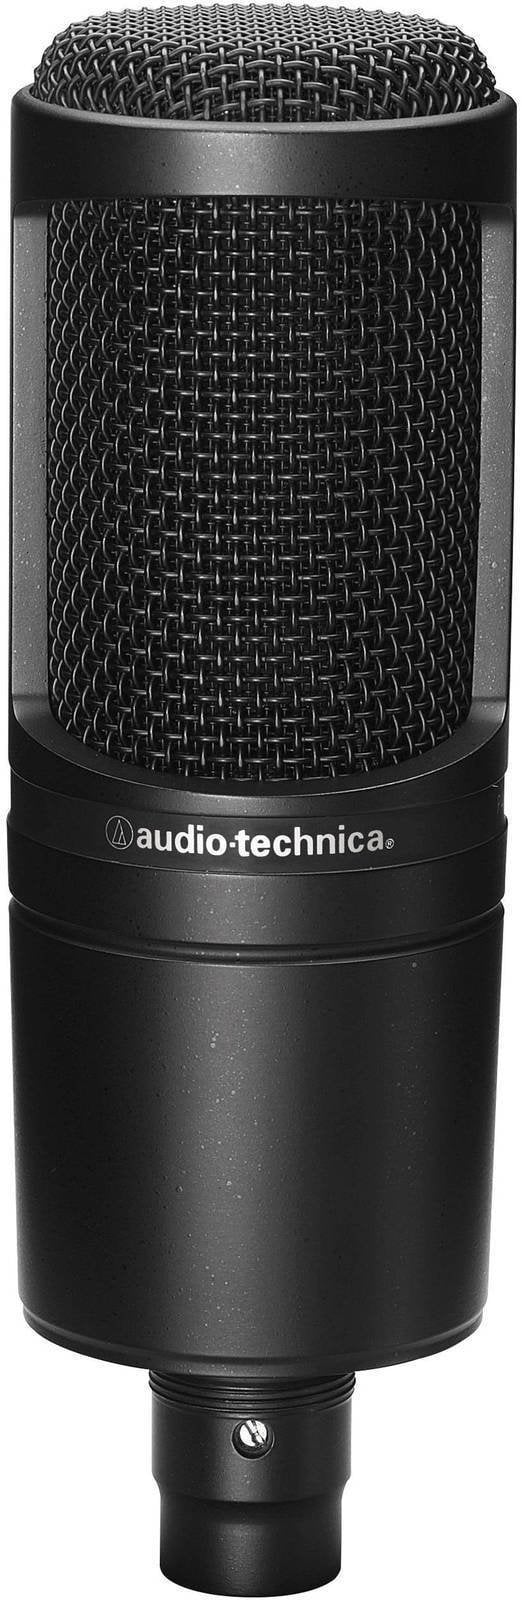 Micrófono de condensador de estudio Audio-Technica AT2020 Micrófono de condensador de estudio